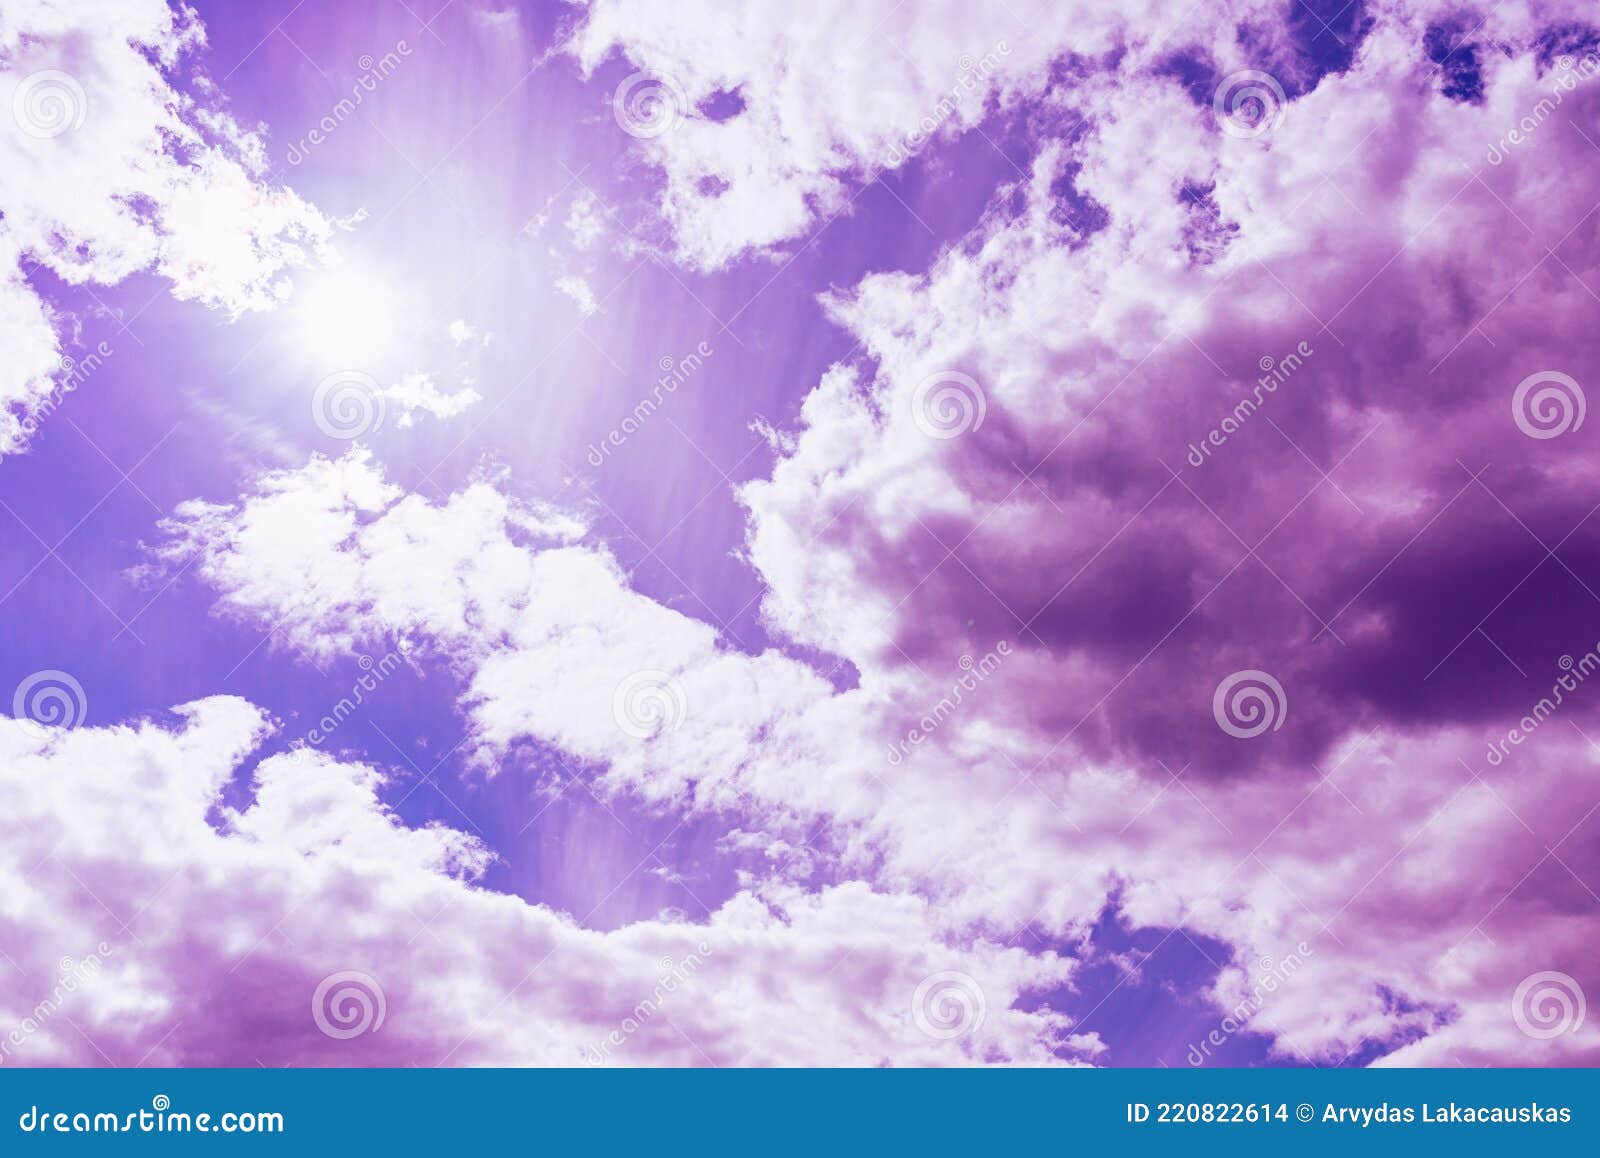 Bầu trời xanh đẹp chào đón những đám mây màu tím đang thong dong trên trời. Hãy tận hưởng khoảnh khắc thư giãn và cảm nhận sự đẹp đẽ của thiên nhiên. Hình ảnh này sẽ khiến bạn cảm thấy như mình đang đứng trên thiên đường.